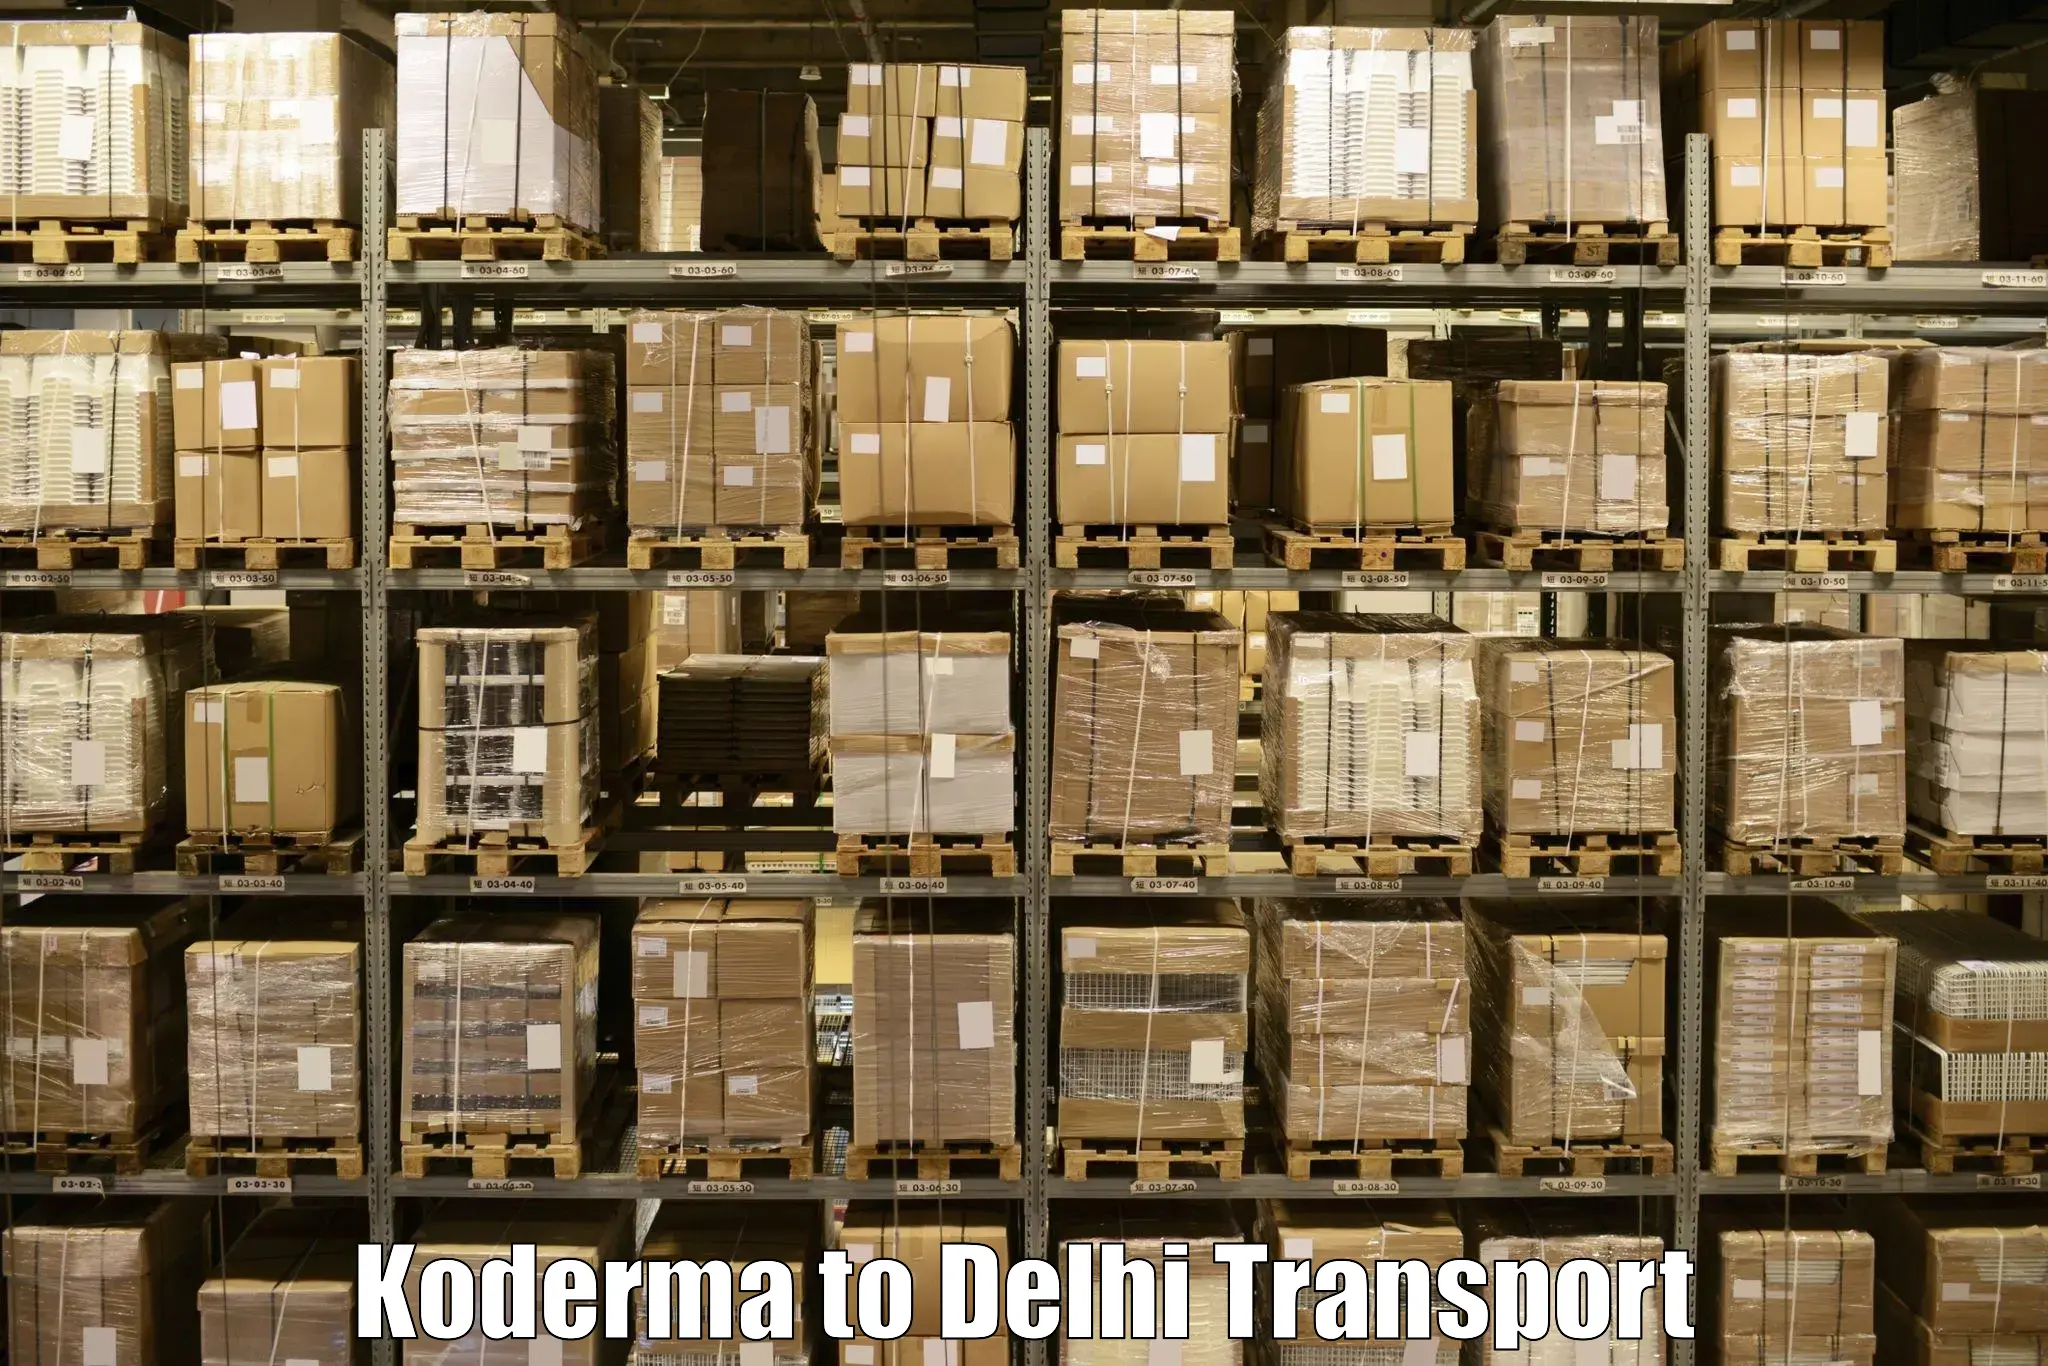 Door to door transport services in Koderma to Indraprastha